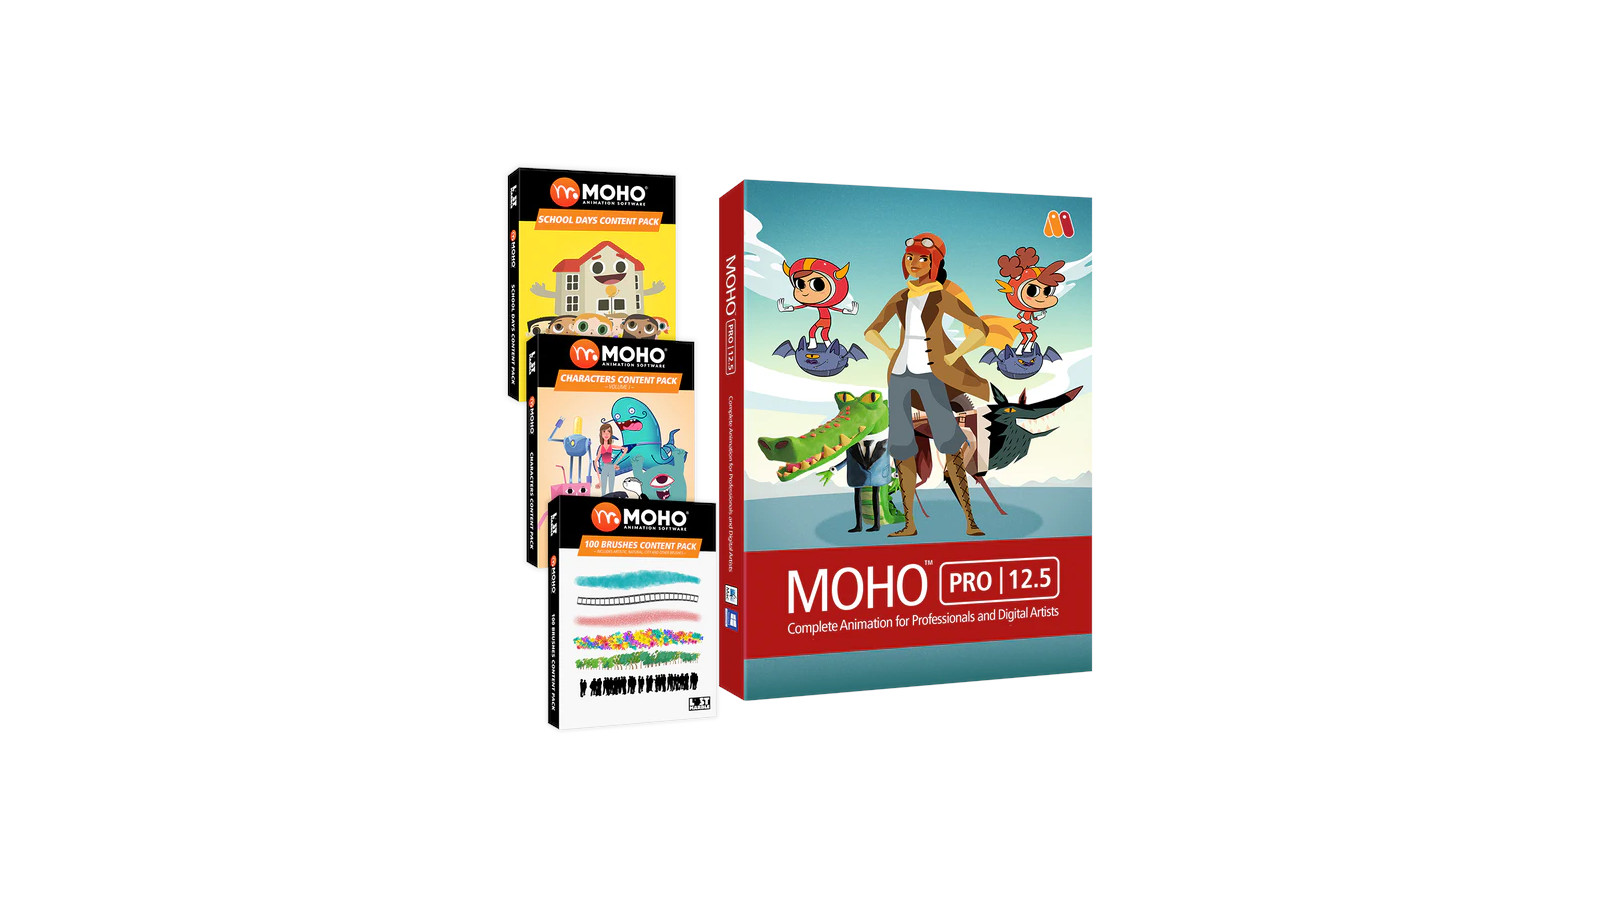 MOHO PRO 12.5 BUNDLE PC/MAC CD Key $386.84